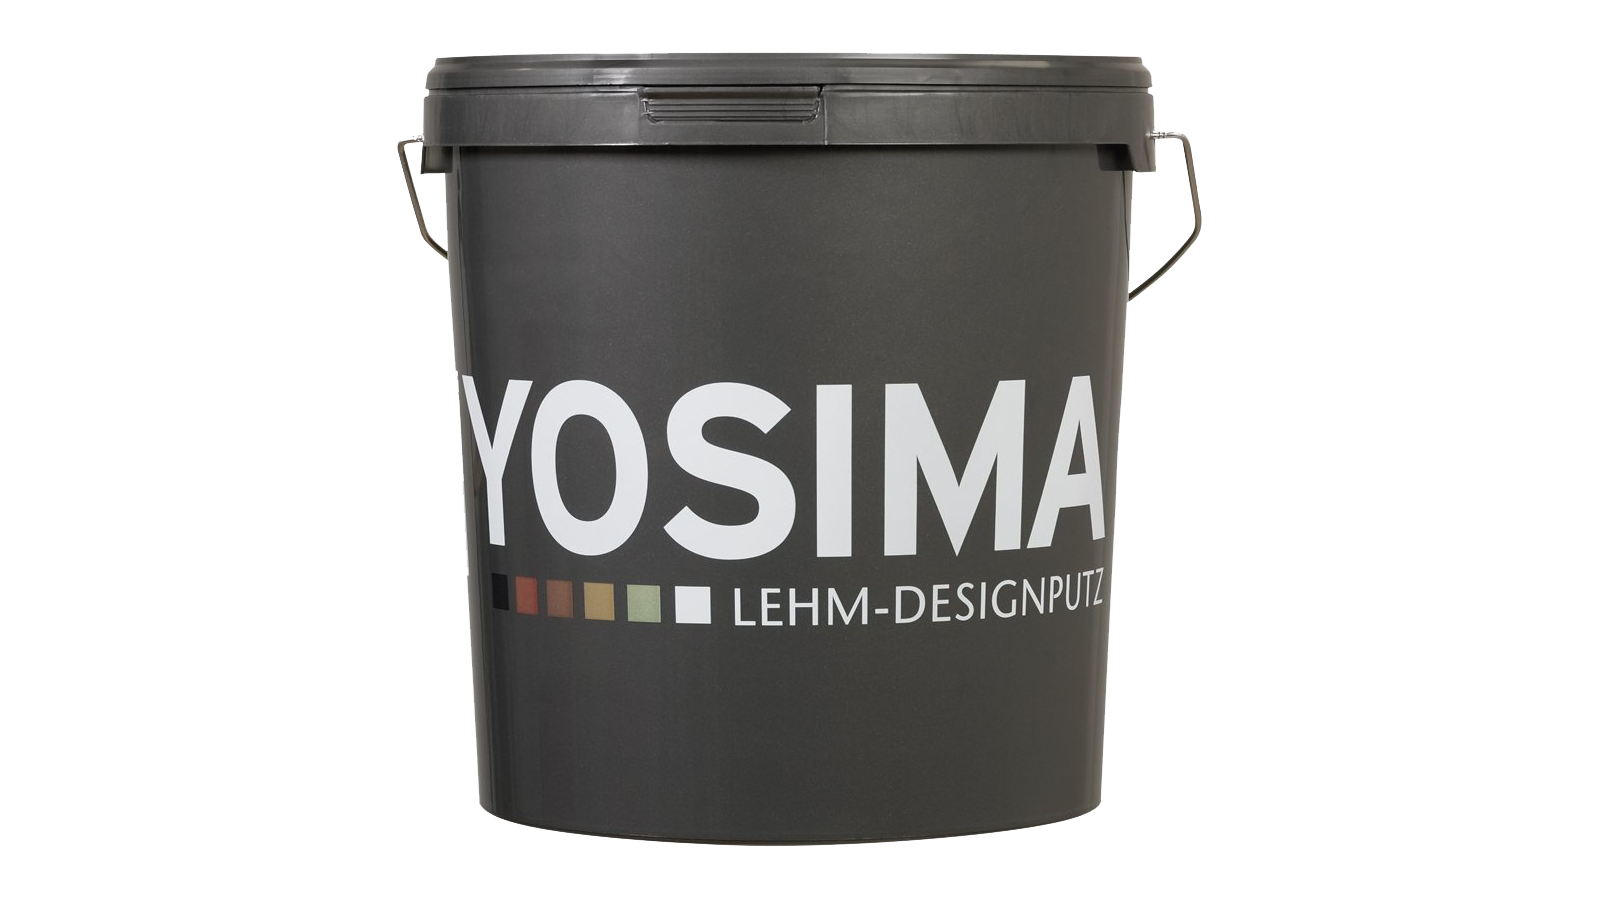 YOSIMA Lehm-Designputz Farbraum Sahara-Beige